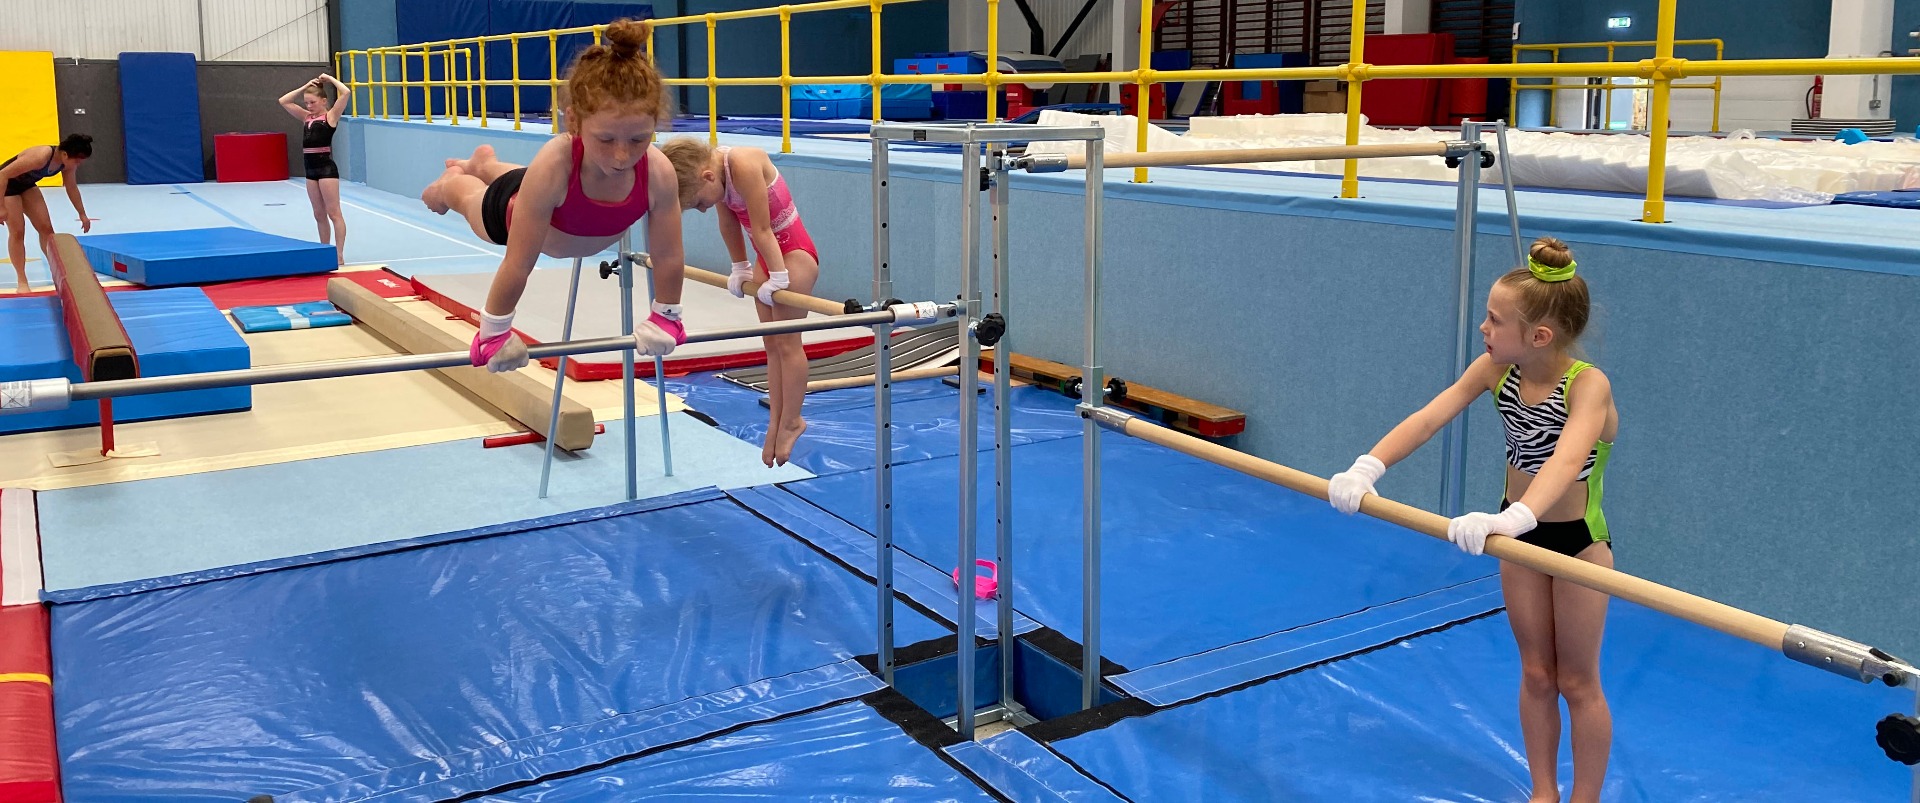 How to Setup A Gymnastics Gym